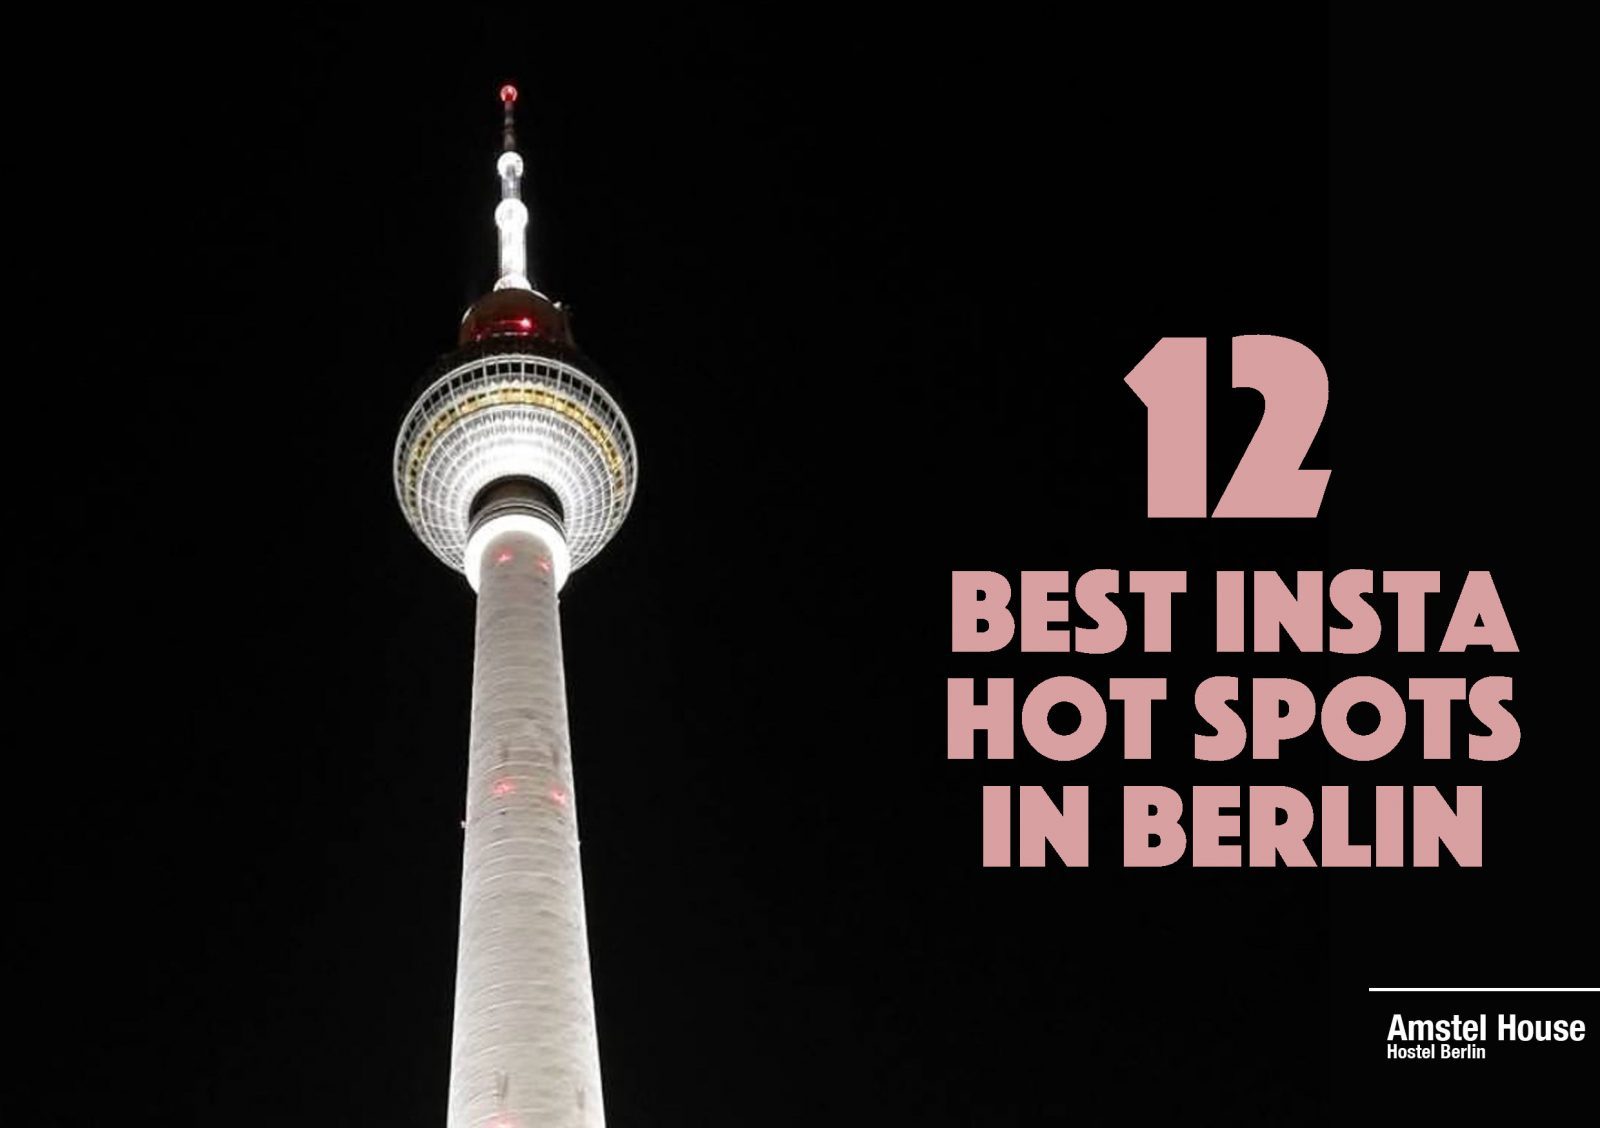 Best insta spots in Berlin